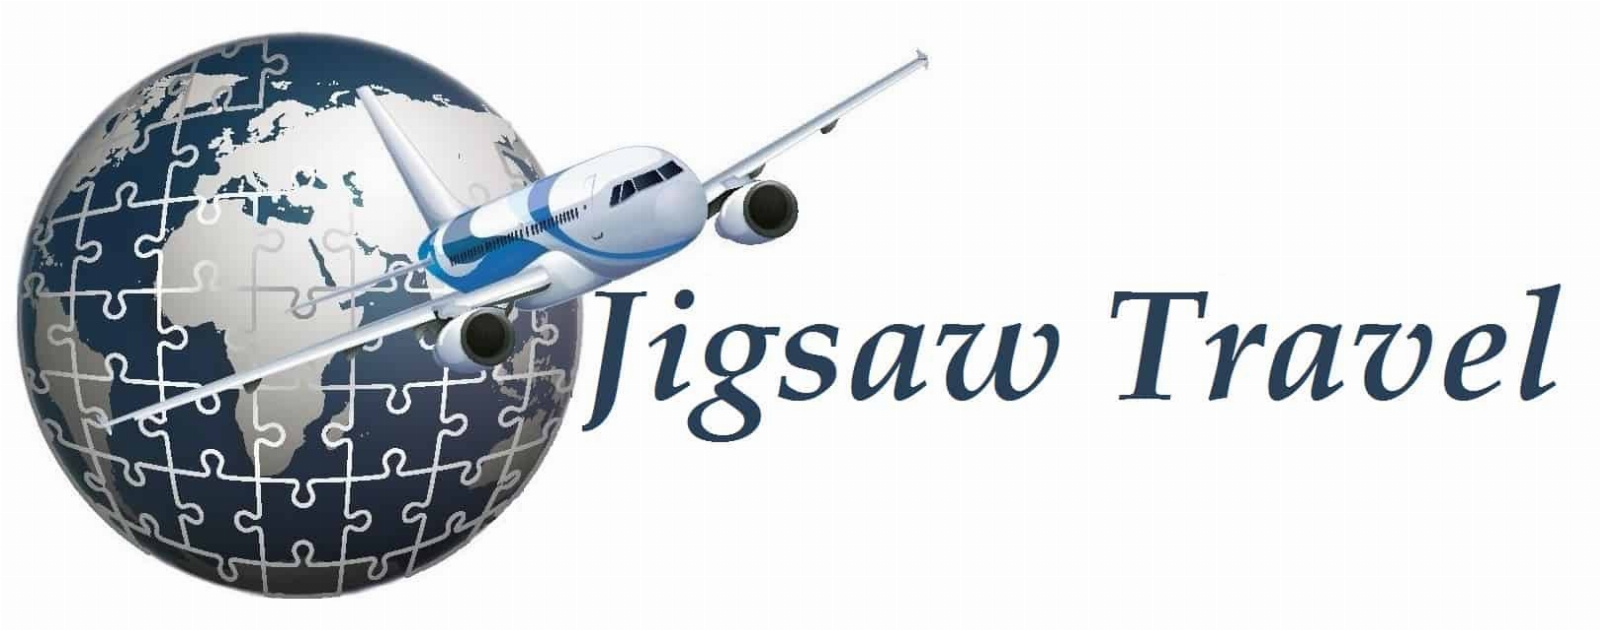 Jigsaw-Travel.jpg